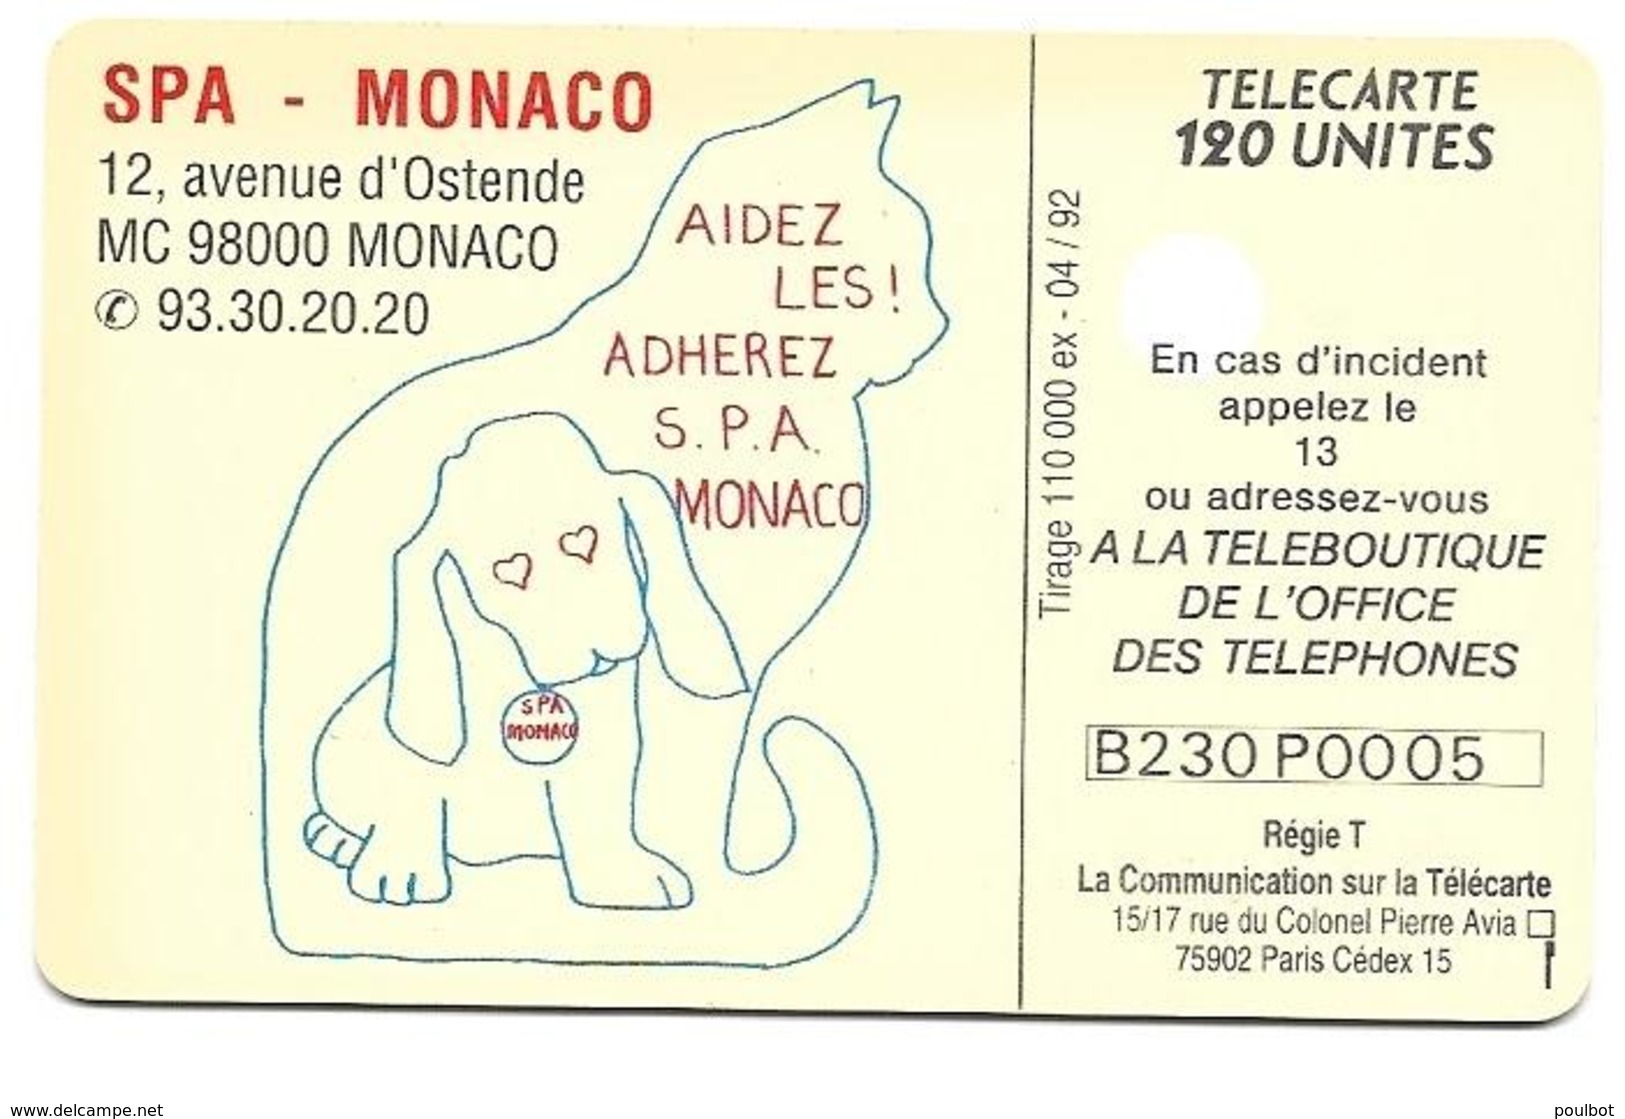 Télécarte Monaco MF 23 SPA De Monaco - Monaco